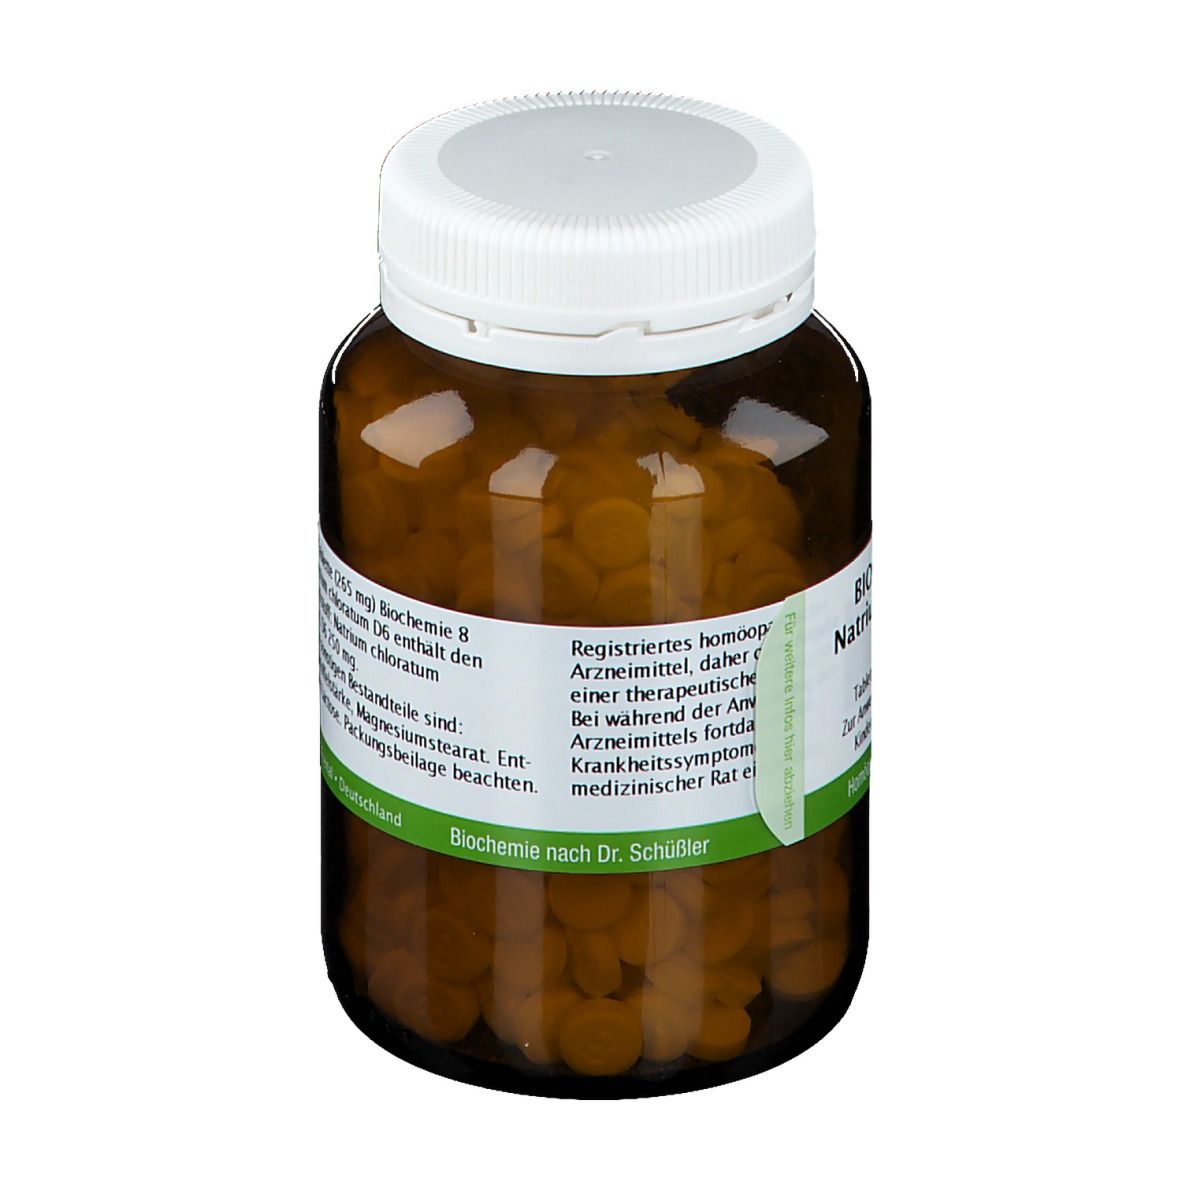 Bombastus Biochemie 8 Natrium chloratum D 6 Tabletten